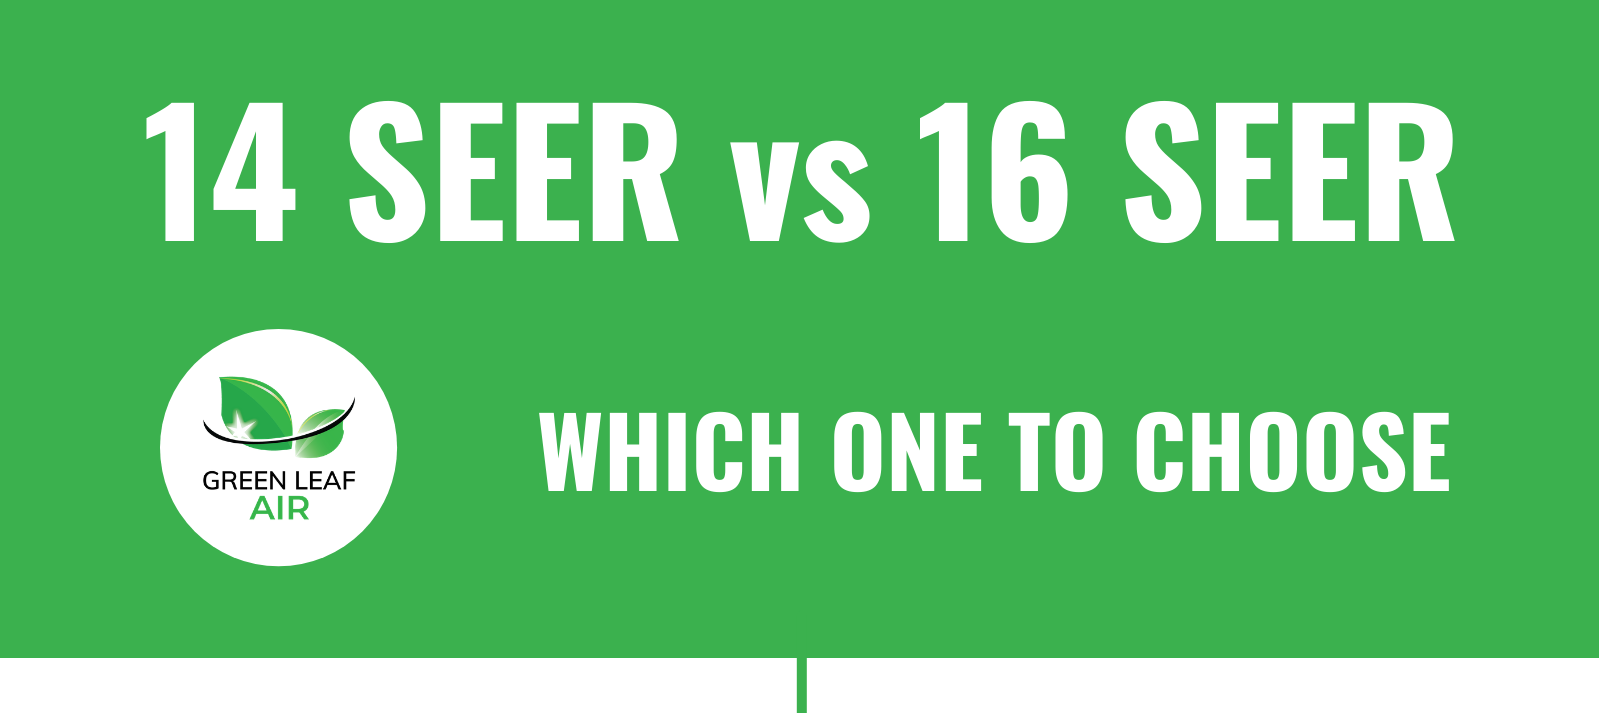 14 SEER vs 16 SEER – Which One To Choose